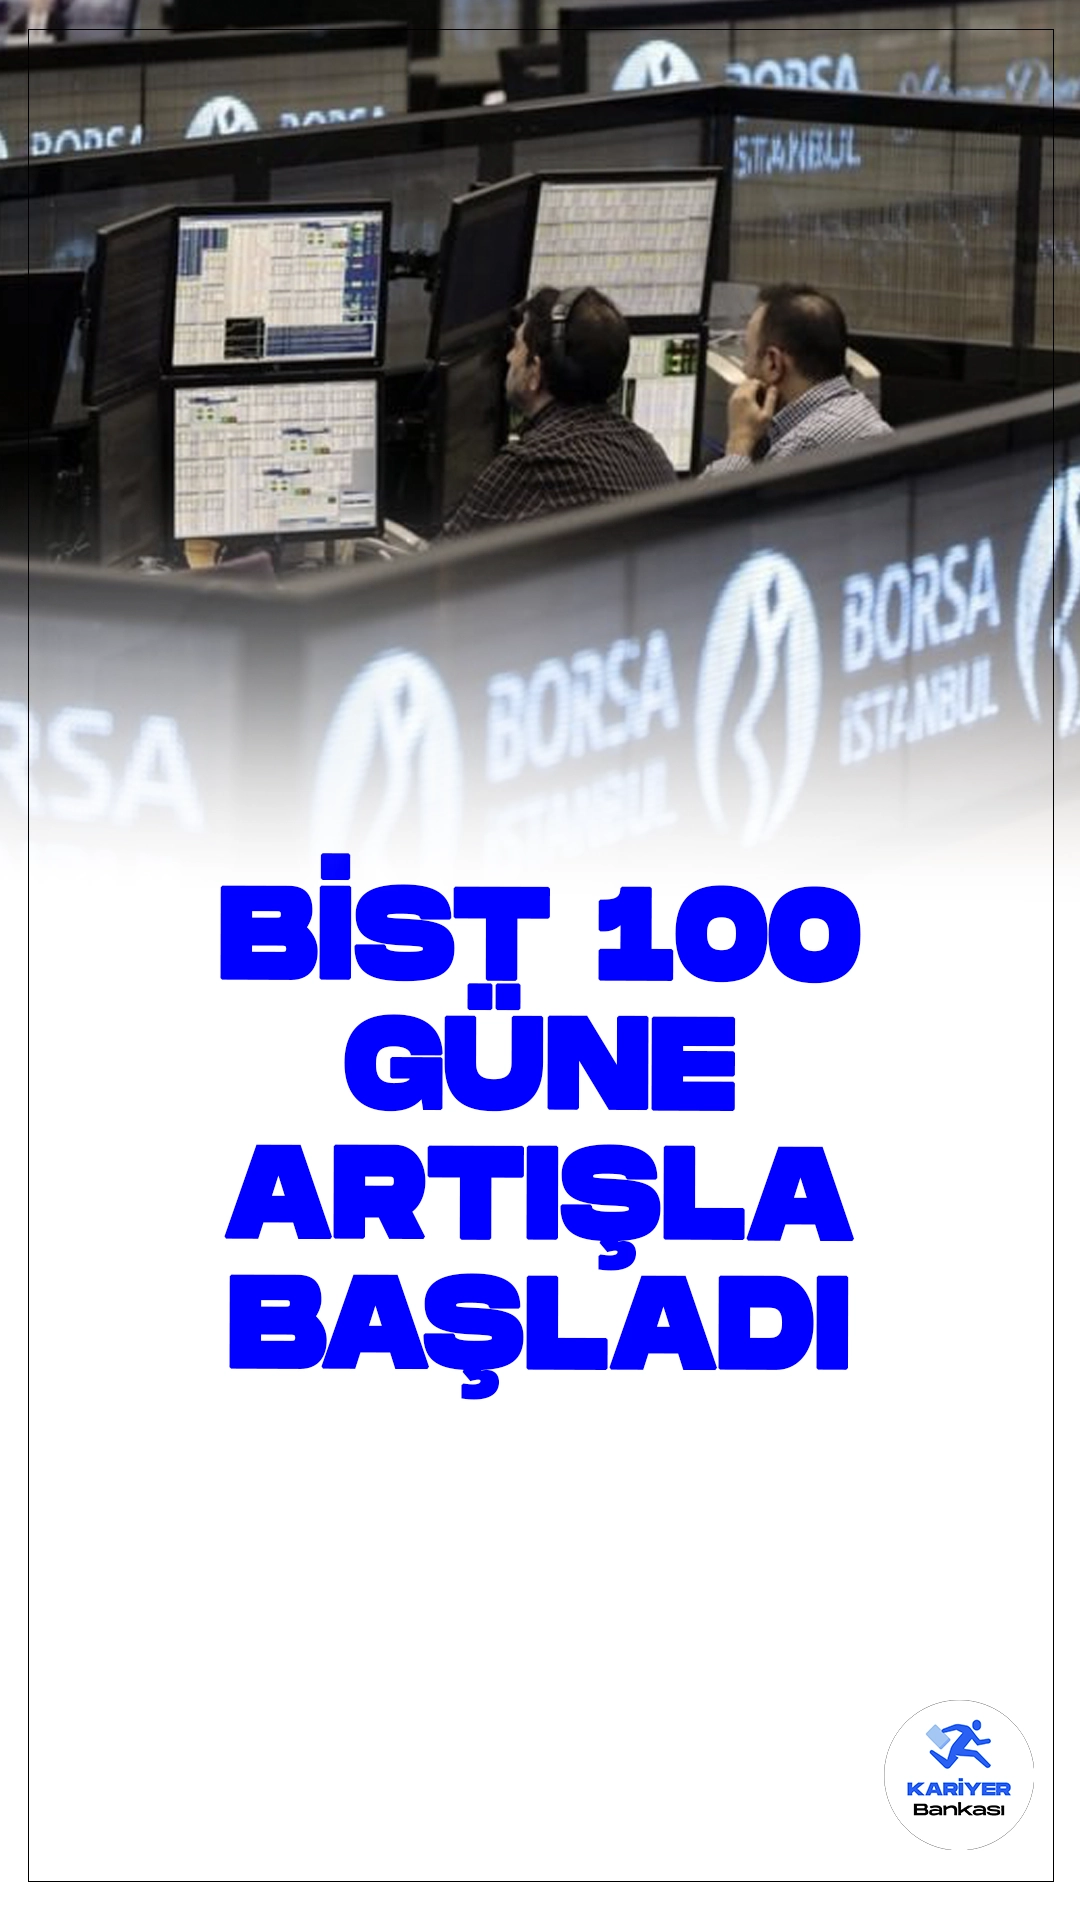 Borsa Güne Yükselişle Başladı.Borsa İstanbul'da BIST 100 endeksi, güne yüzde 0,42 yükselişle 10.322,45 puandan başladı.